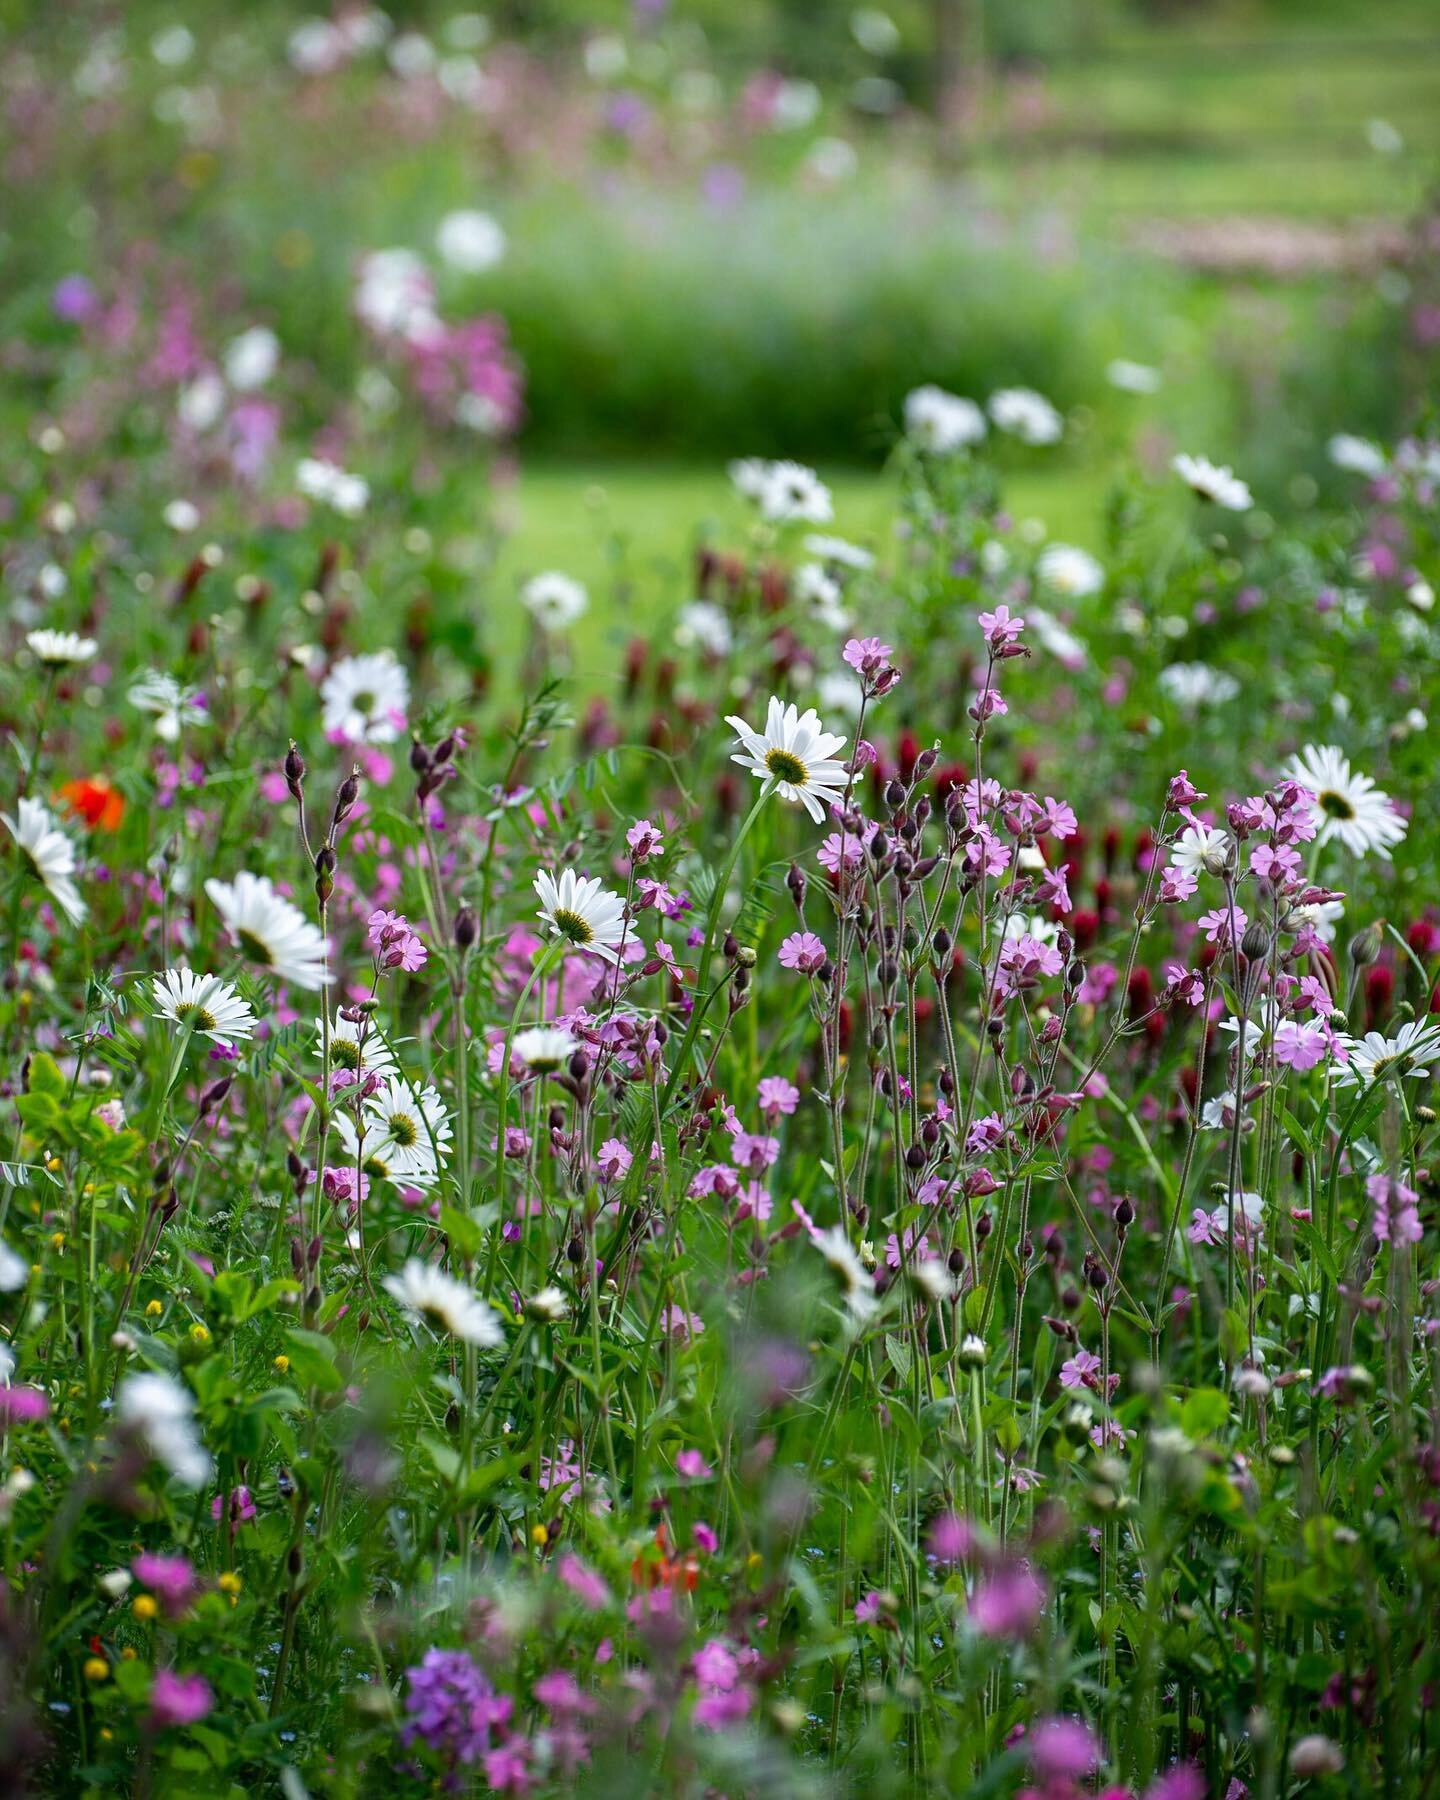 Wildflower meadow changing weekly 💚 @wildflowerturf.co.uk #gardendesign #gardendesigner #wildflowers #wildflowermeadow #beefood #wildflowerseason #wildlifegarden